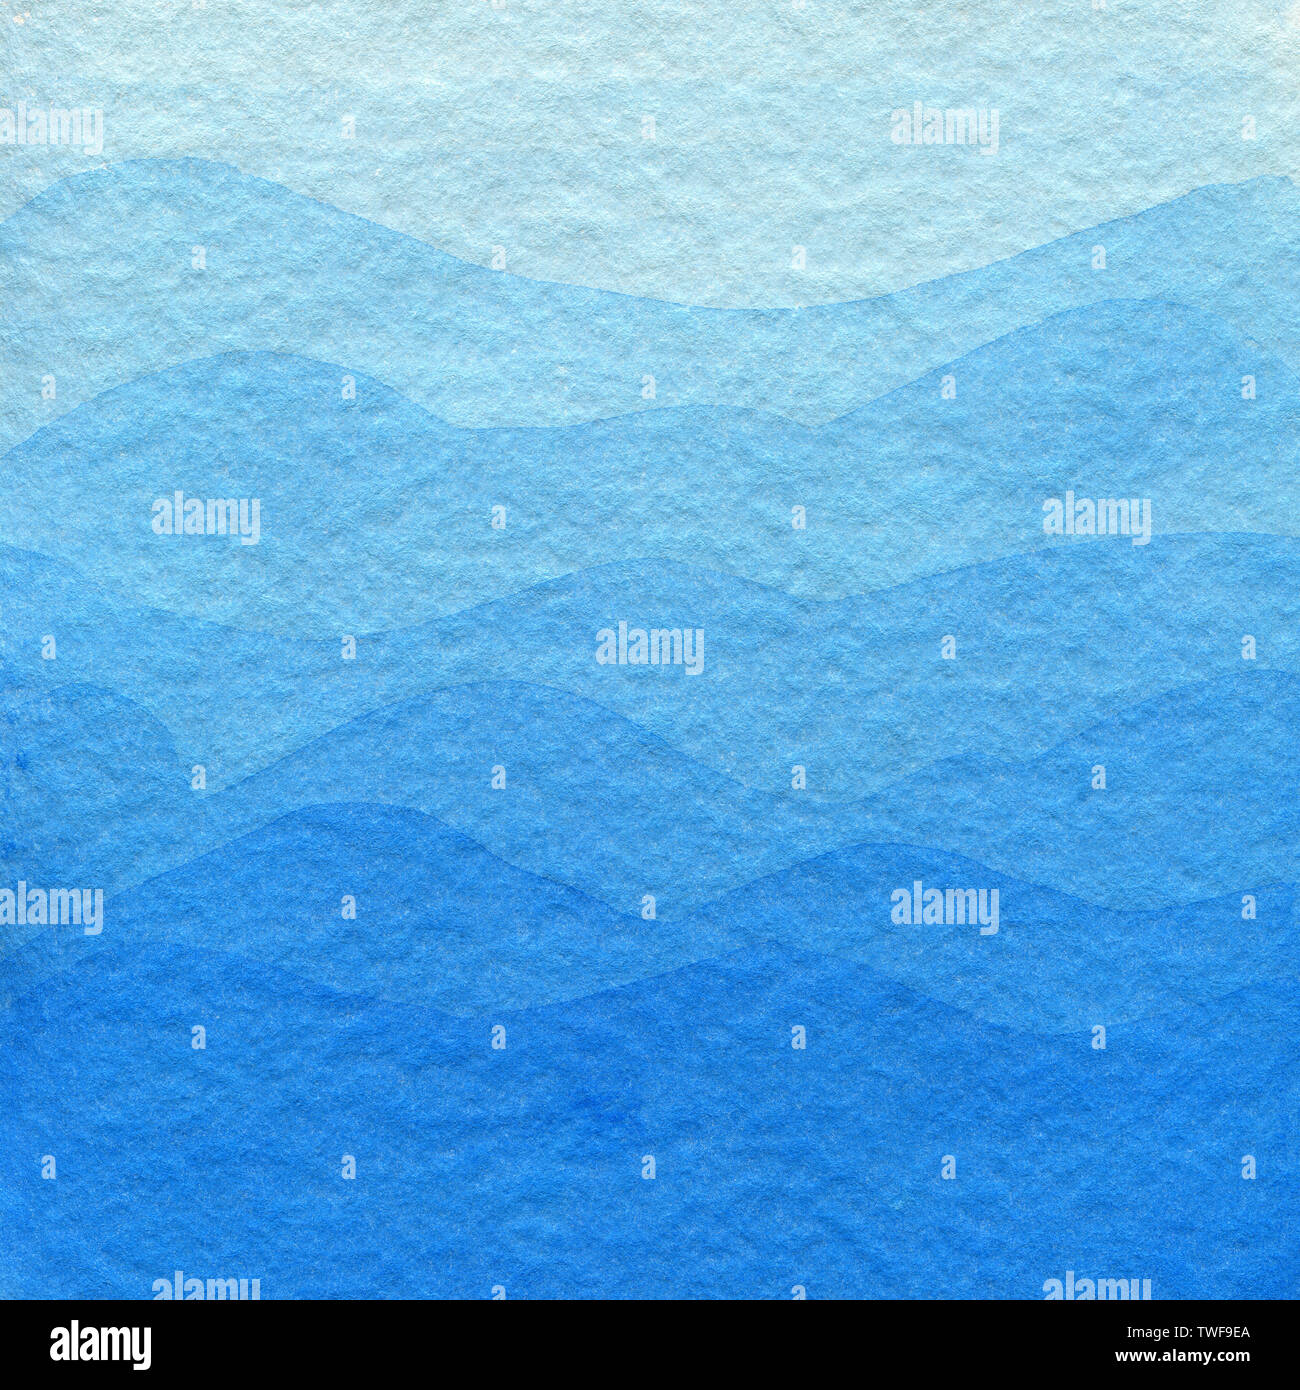 Blau Aquarell Hintergrund, helle Farben in der Steigung. Hand abstrakt Hintergrund in blau sanfte Farben gezeichnet, sieht aus wie die Berge. Stockfoto